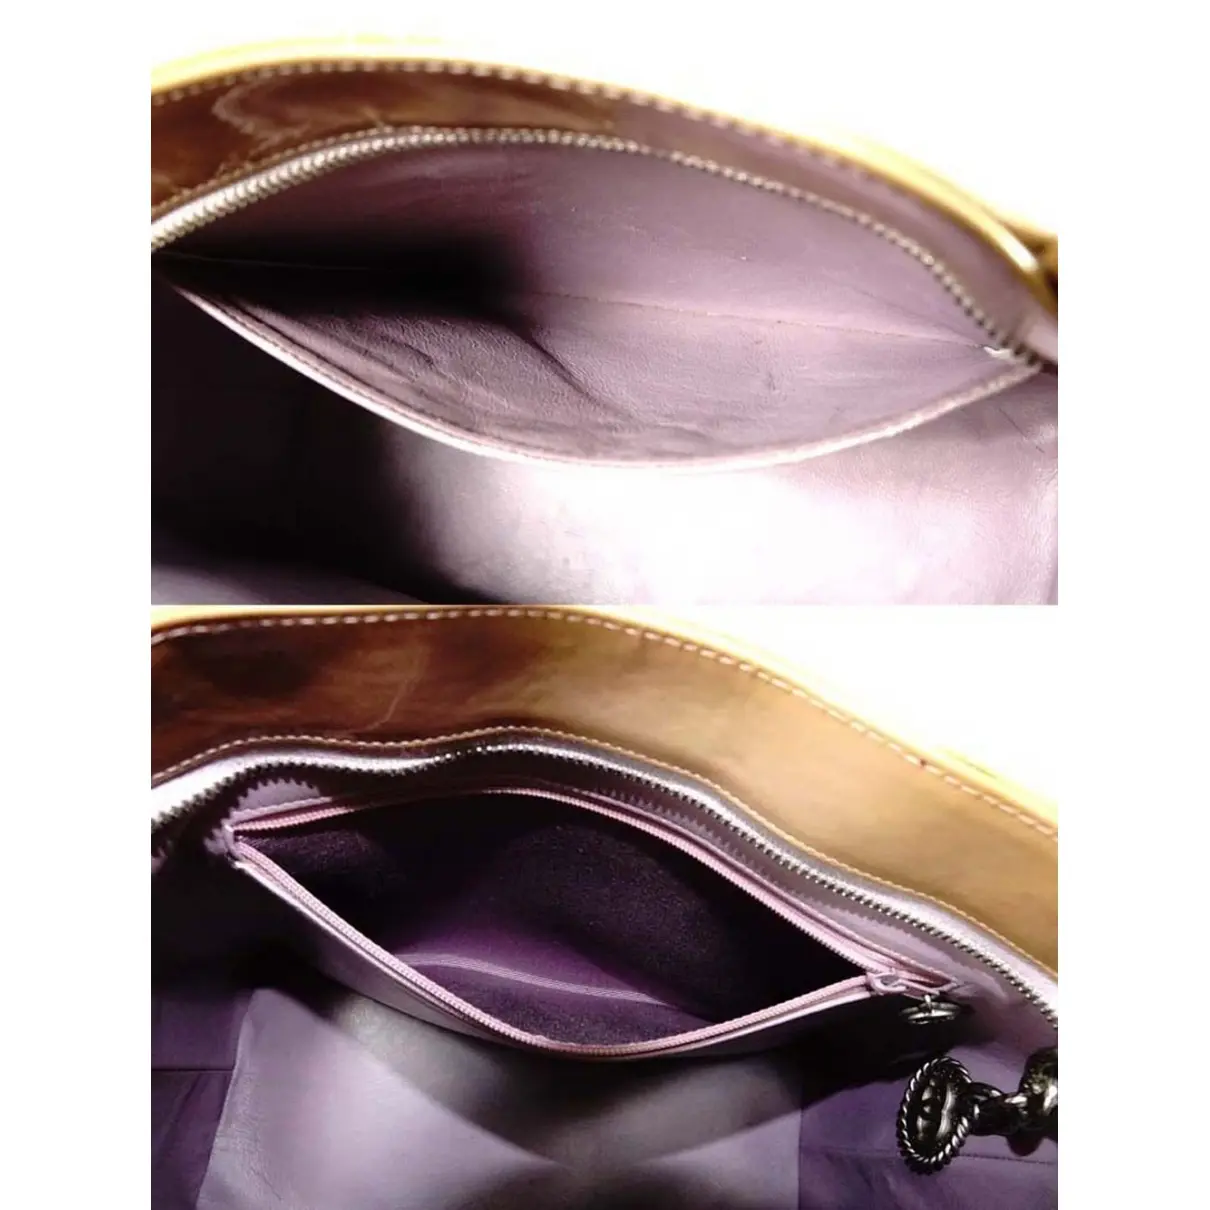 Chanel Médaillon patent leather handbag for sale - Vintage